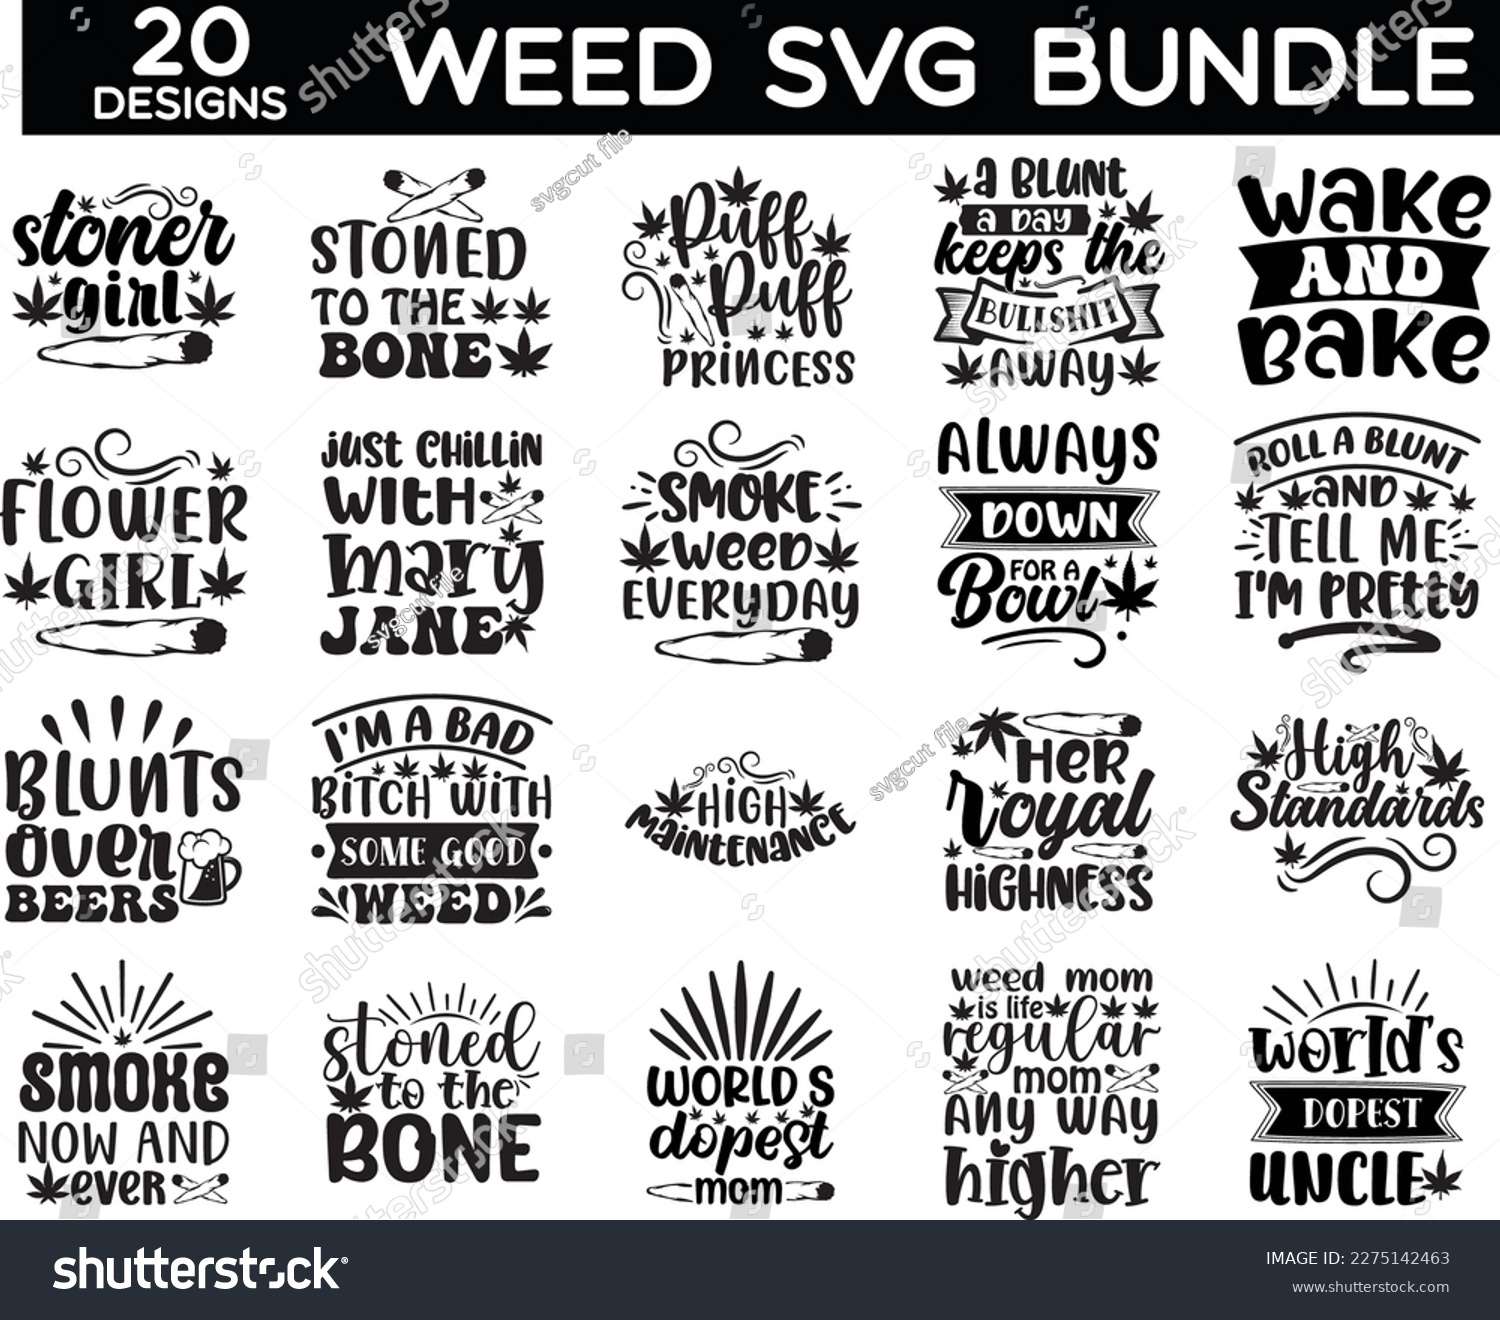 SVG of weed svg bundle, weed svg design svg